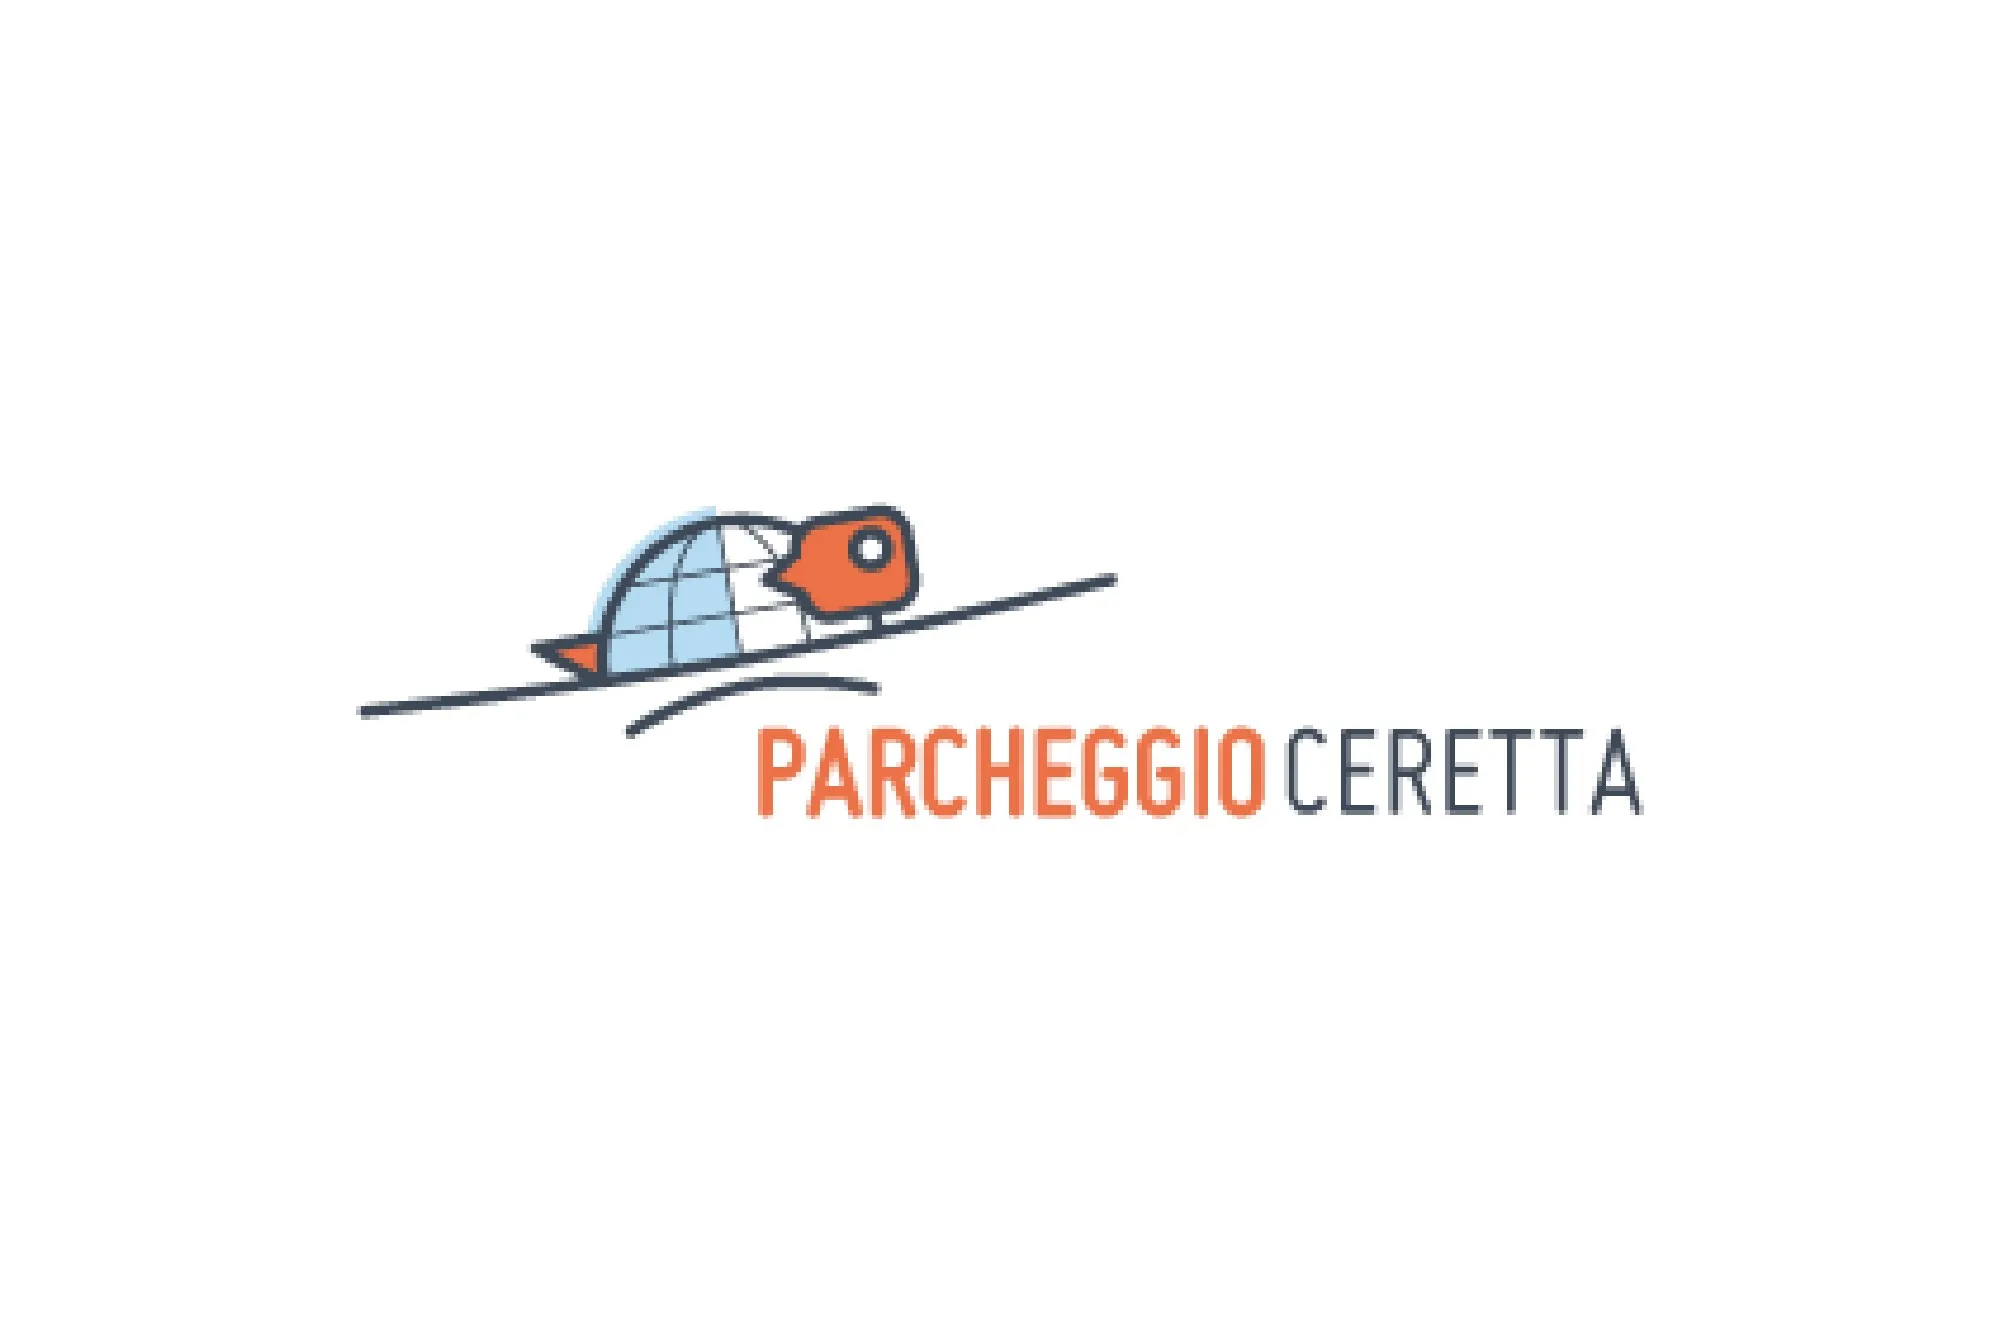 Parcheggio Ceretta (Paga in parcheggio) - Turin Airport Parking - picture 1